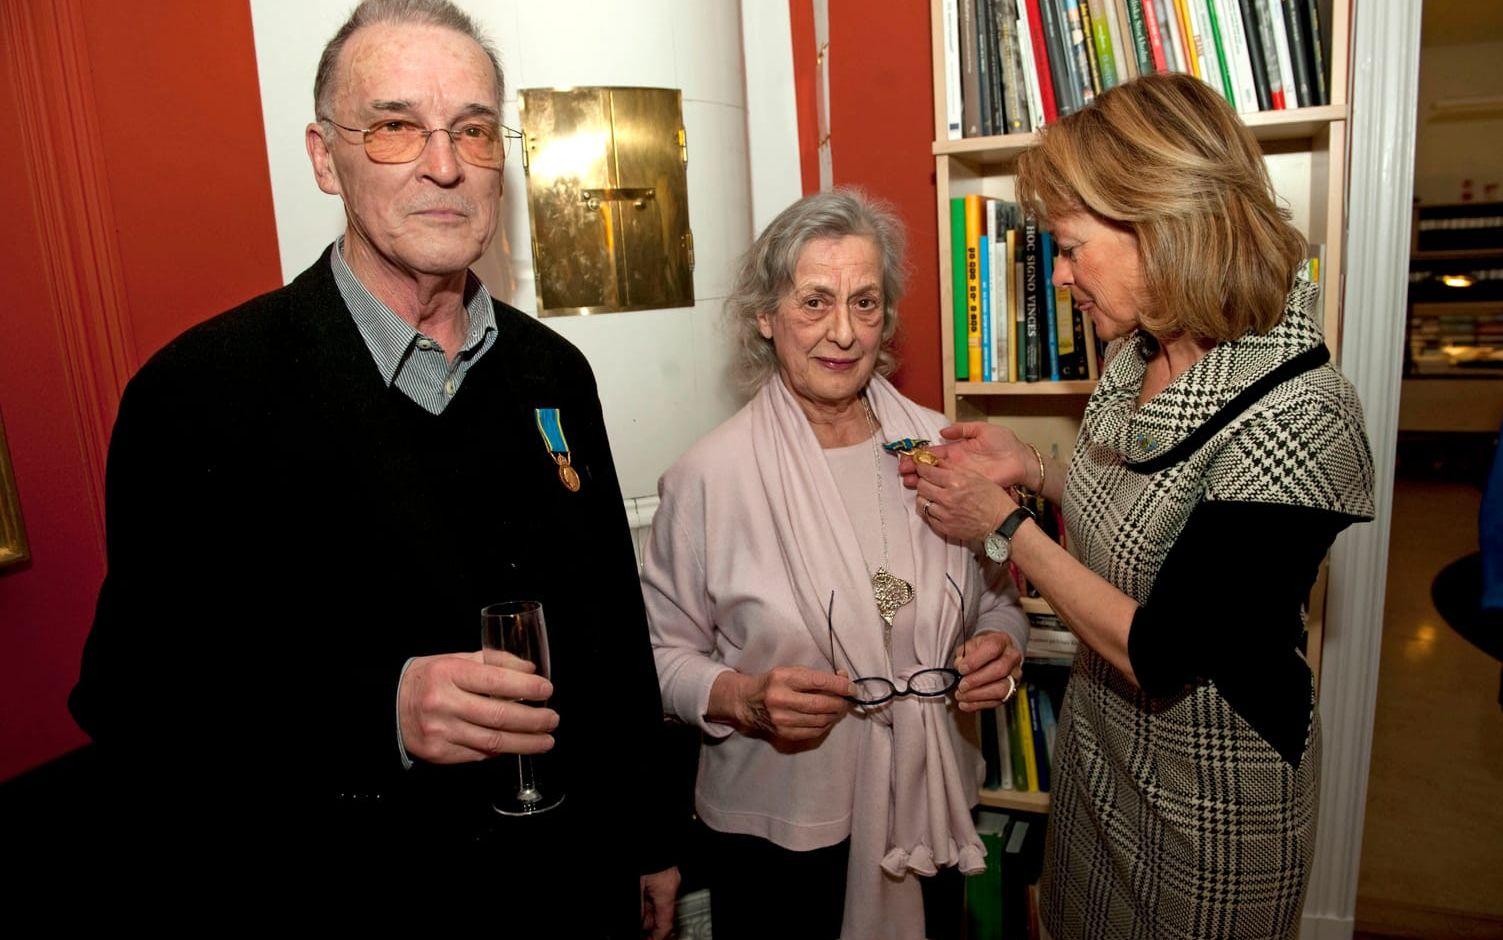 År 2010 tilldelades Bernt Rosengren regeringens medalj i guld av åttonde storleken, samtidigt som silversmideskonstnären Rosa Taikon. Medaljen delades ut av dåvarande kulturminister Lena Adelsohn Liljeroth. 